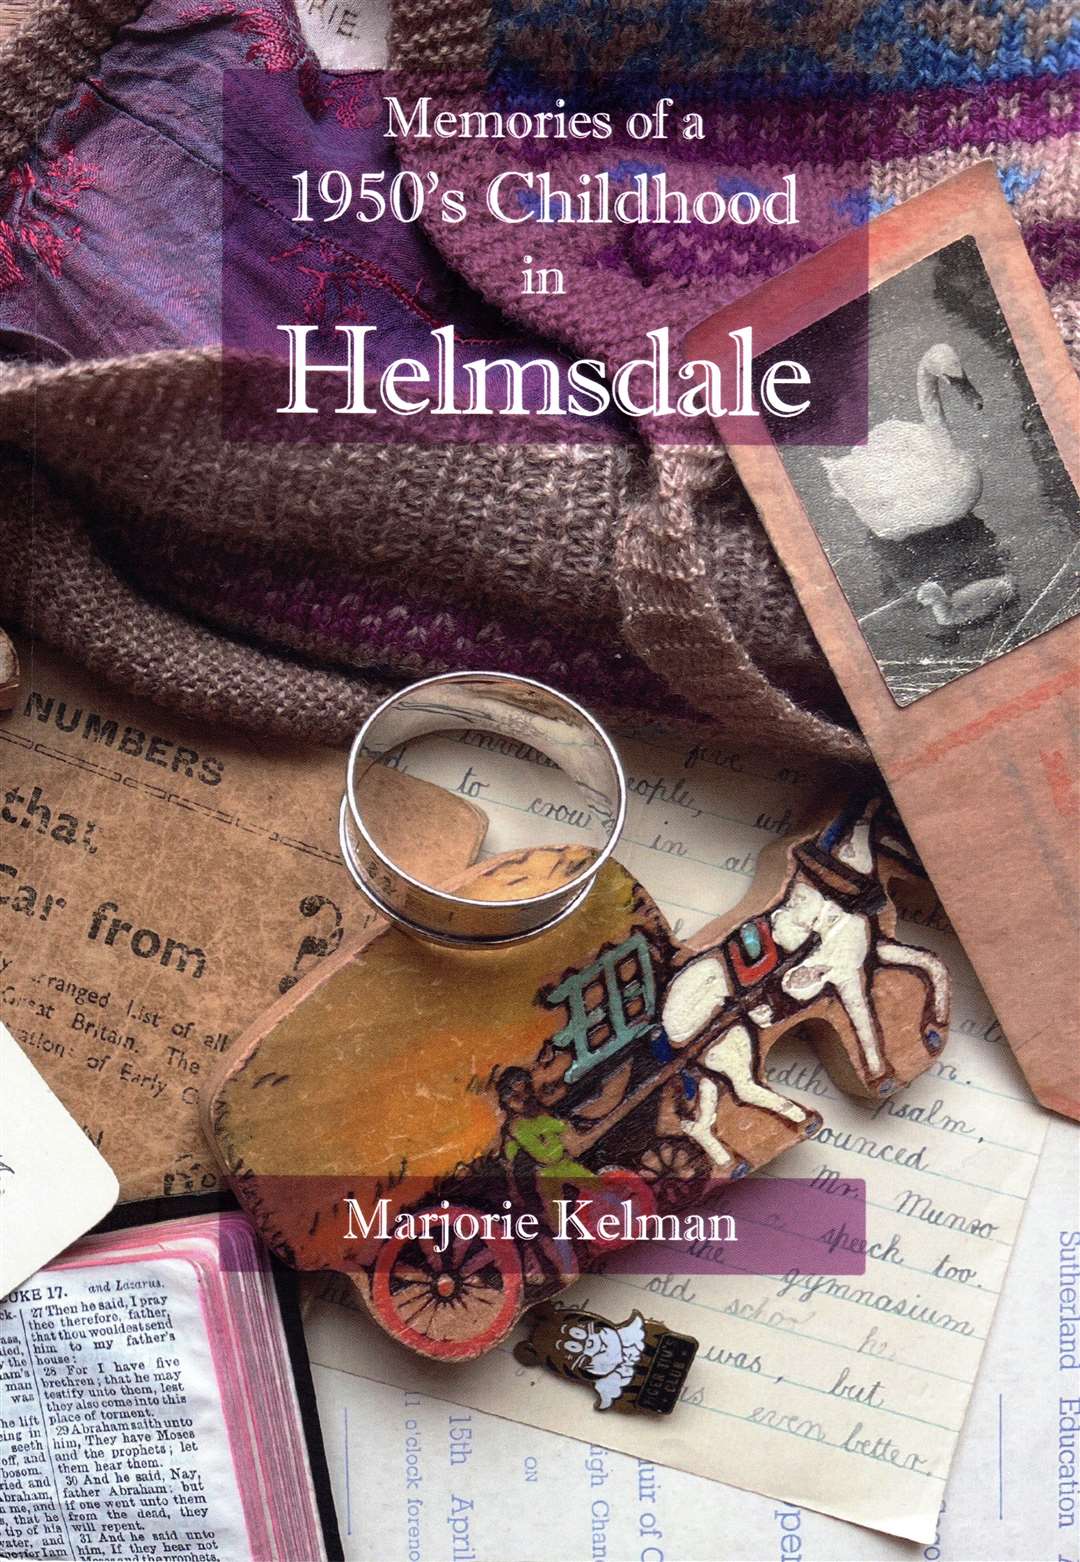 Marjorie Kelman's book is a joy to read.